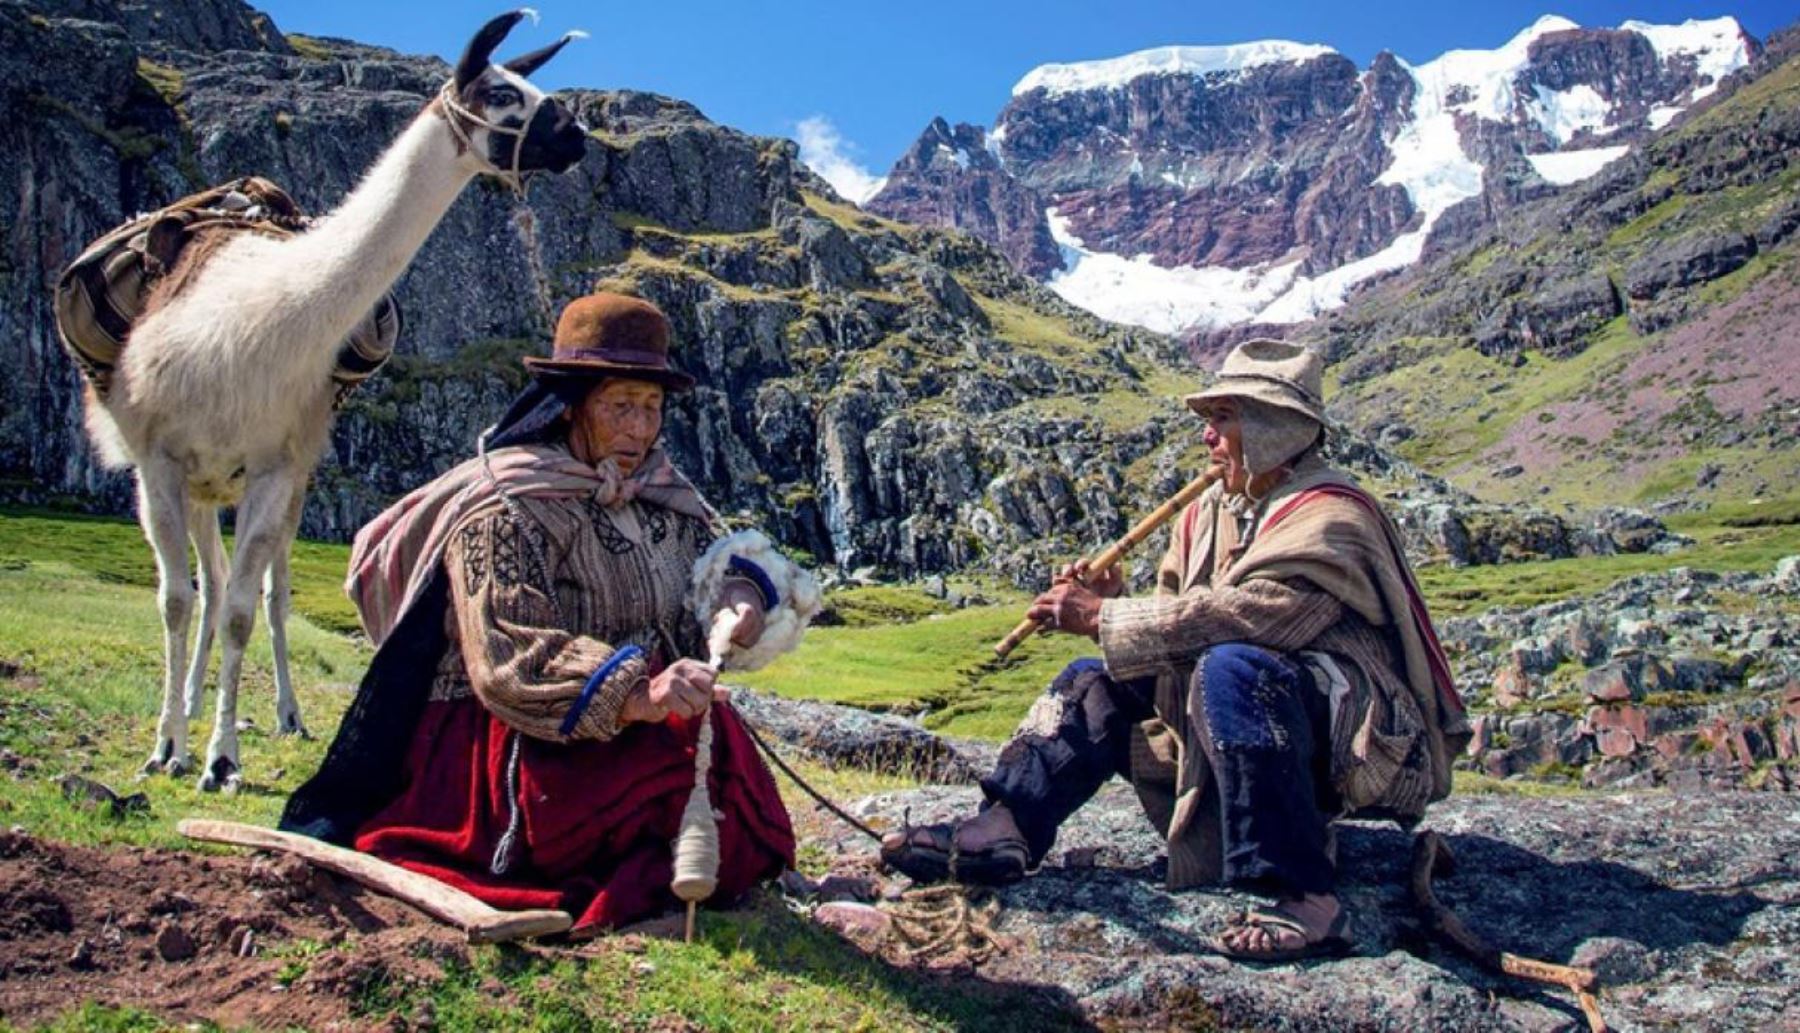 La Dirección Desconcentrada de Cultura de Pasco proyectó "Wiñaypacha", la primerra película peruana rodada íntegramente en aimara.